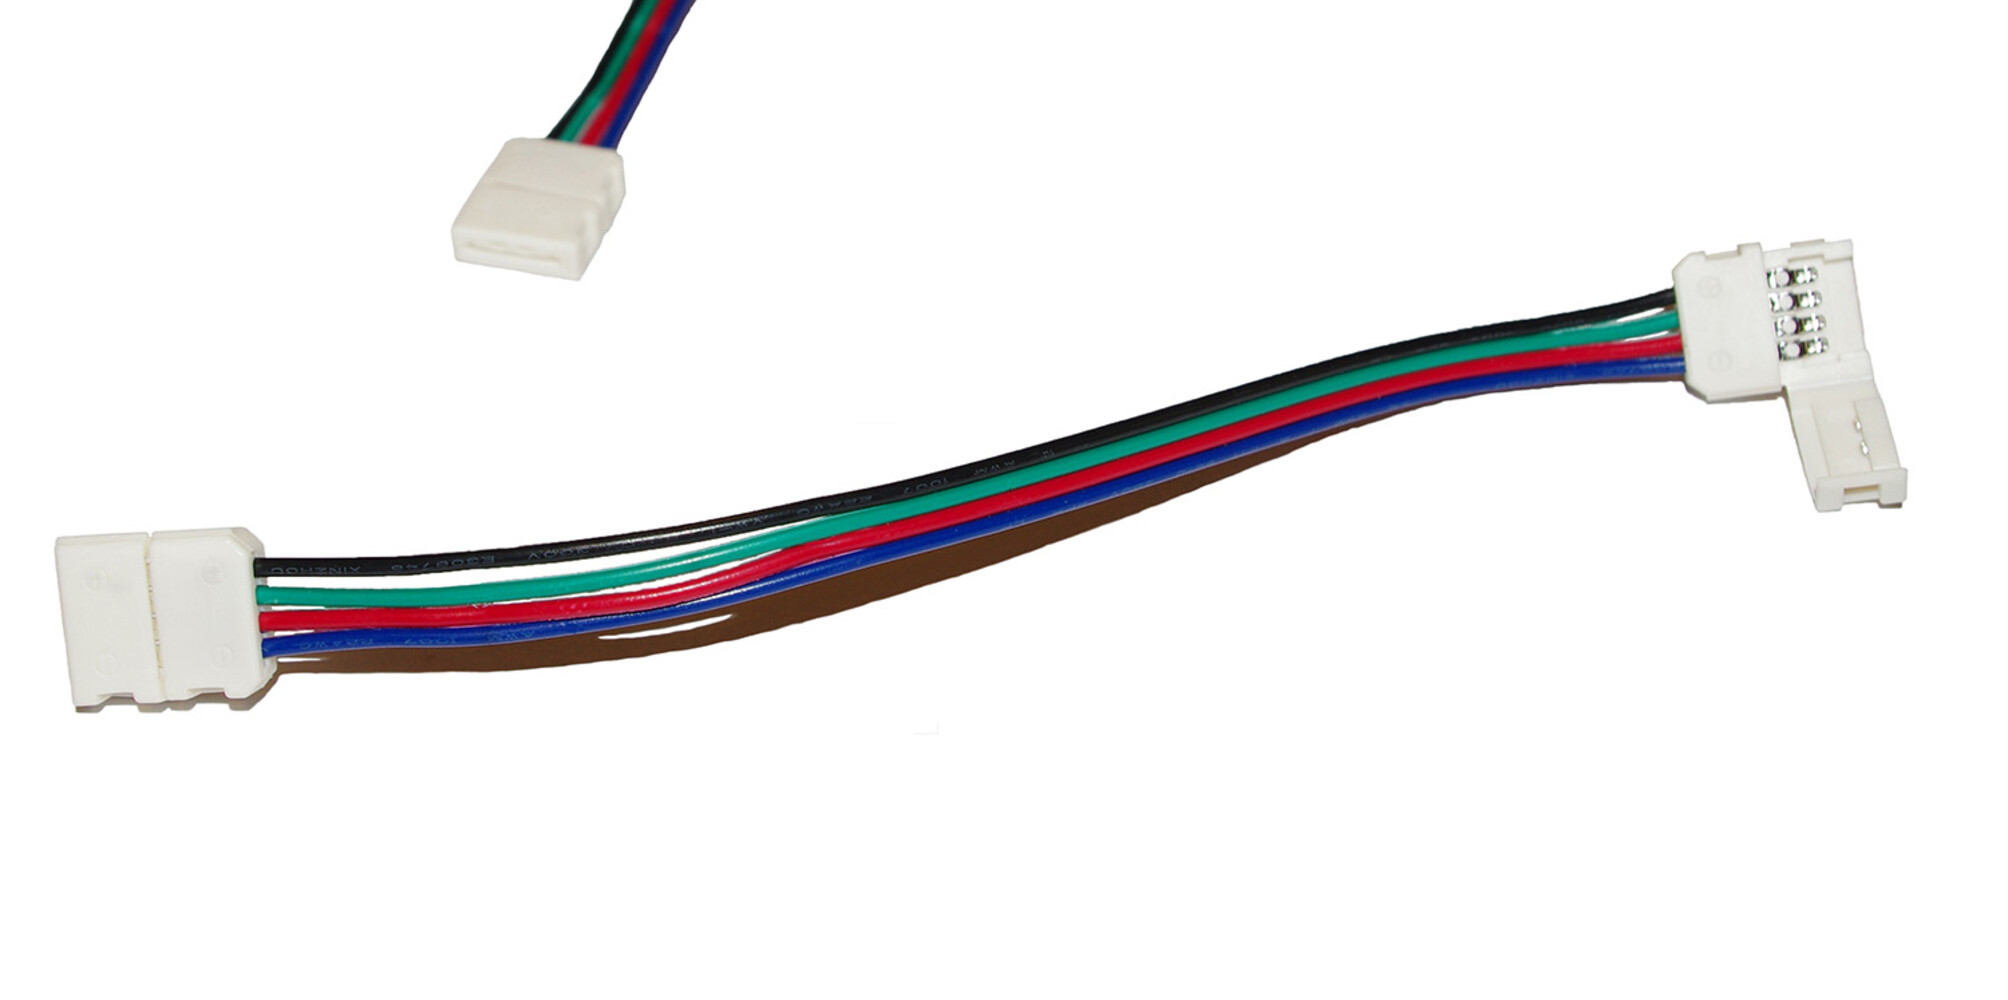 LED Universum LED Streifen Kabel 3er Set 15cm 4 pol mit Klippbefestigung Schnellverbinder für RGB LED Streifen